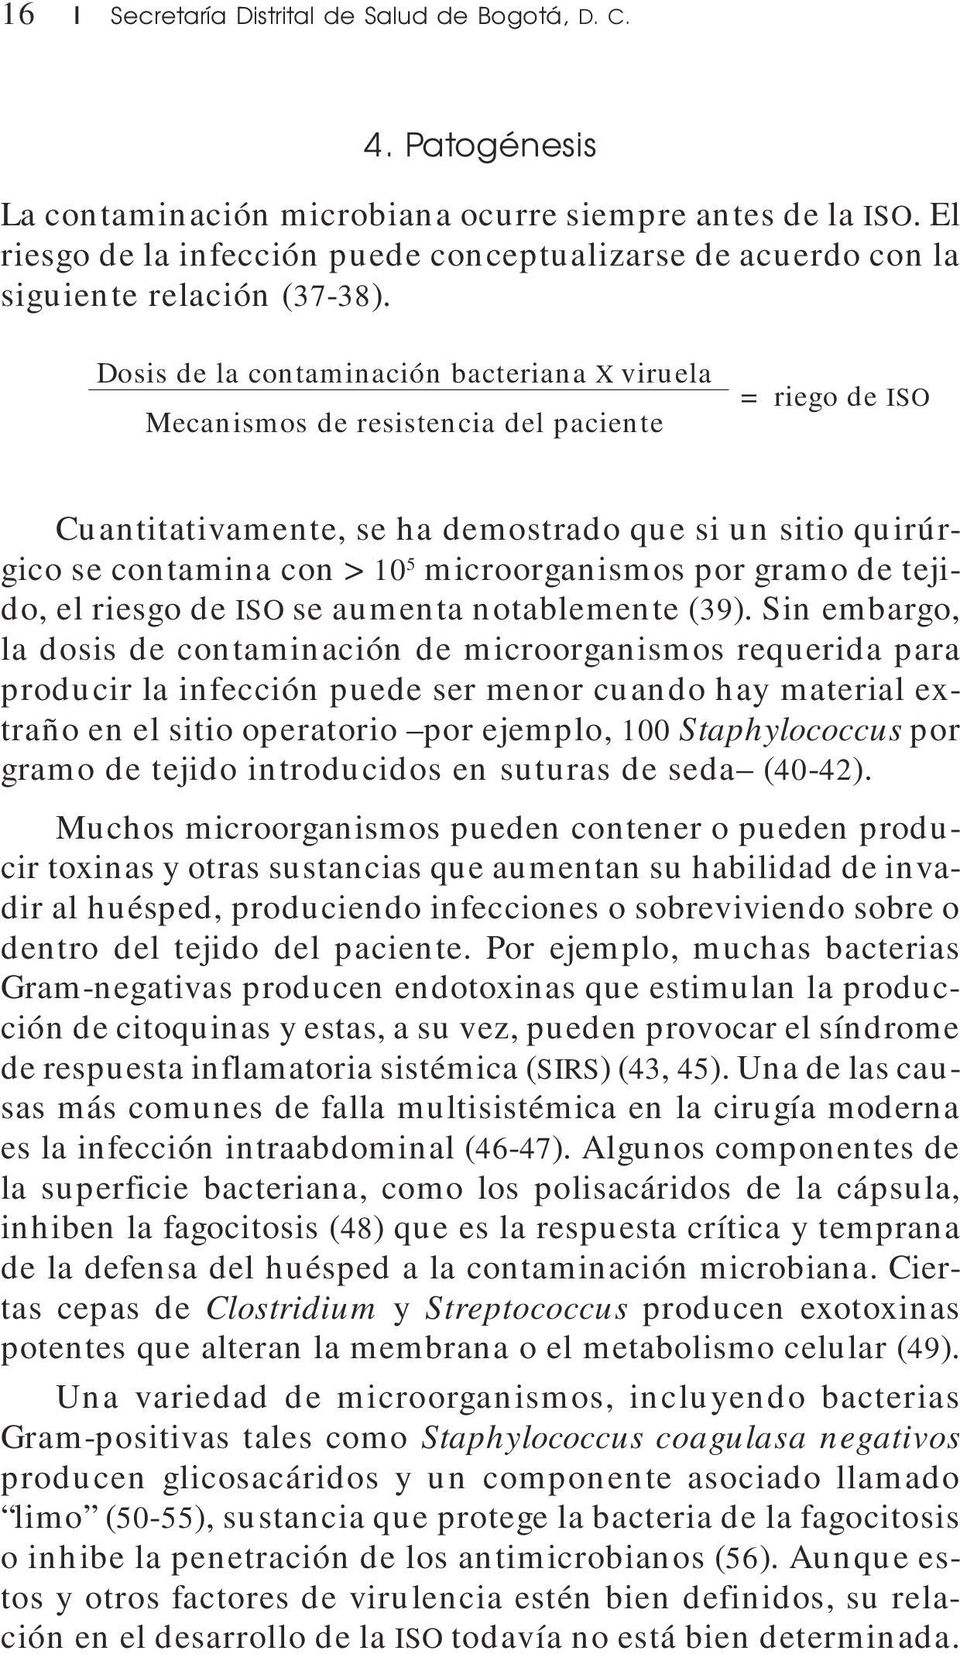 Dosis de la contaminación bacteriana X viruela Mecanismos de resistencia del paciente = riego de ISO Cuantitativamente, se ha demostrado que si un sitio quirúrgico se contamina con >10 5